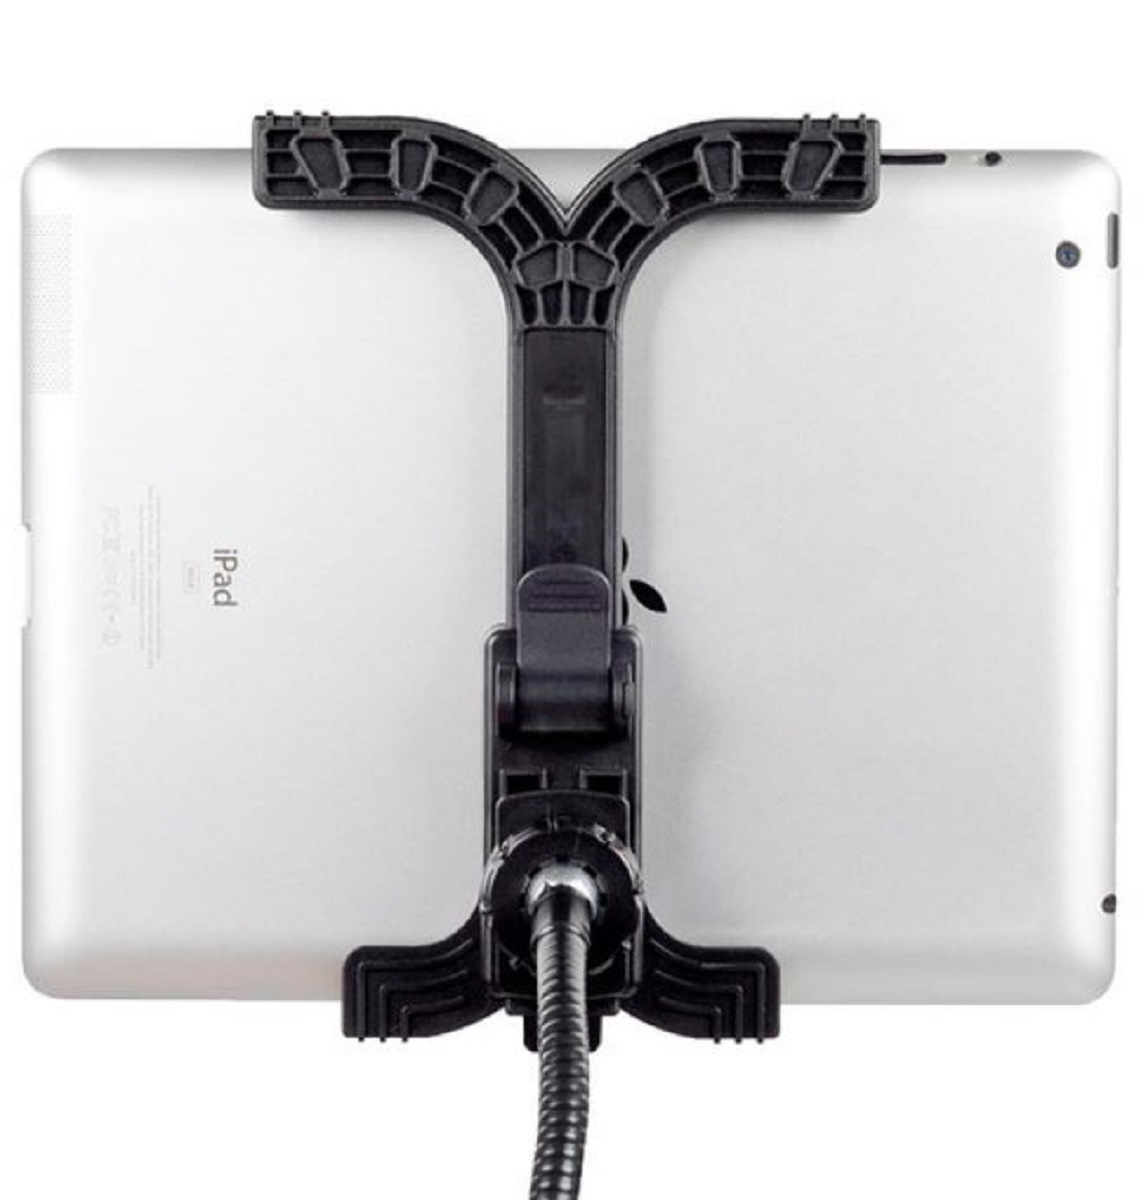 BRESSER BR-145 flexible Schwanenhals Halterung für Tablets und Handys